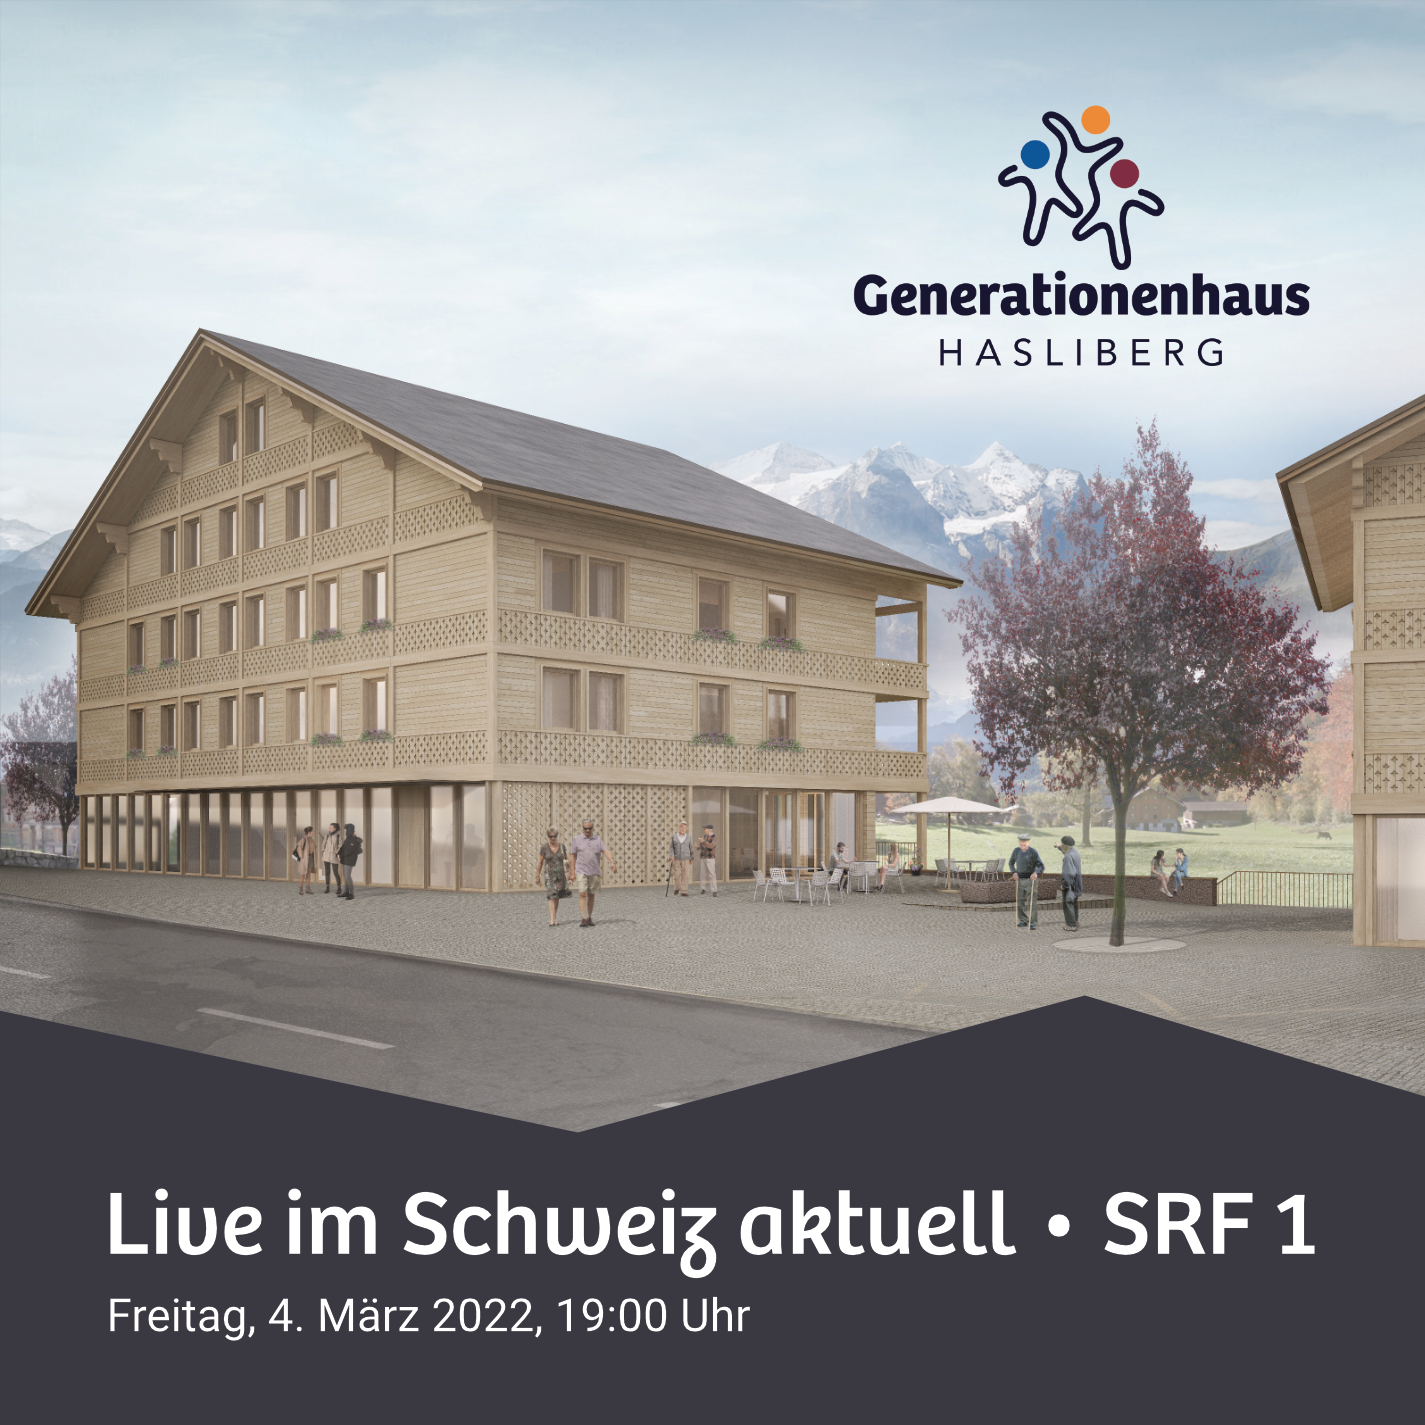 Generationenhaus Hasliberg im SRF Schweiz aktuell